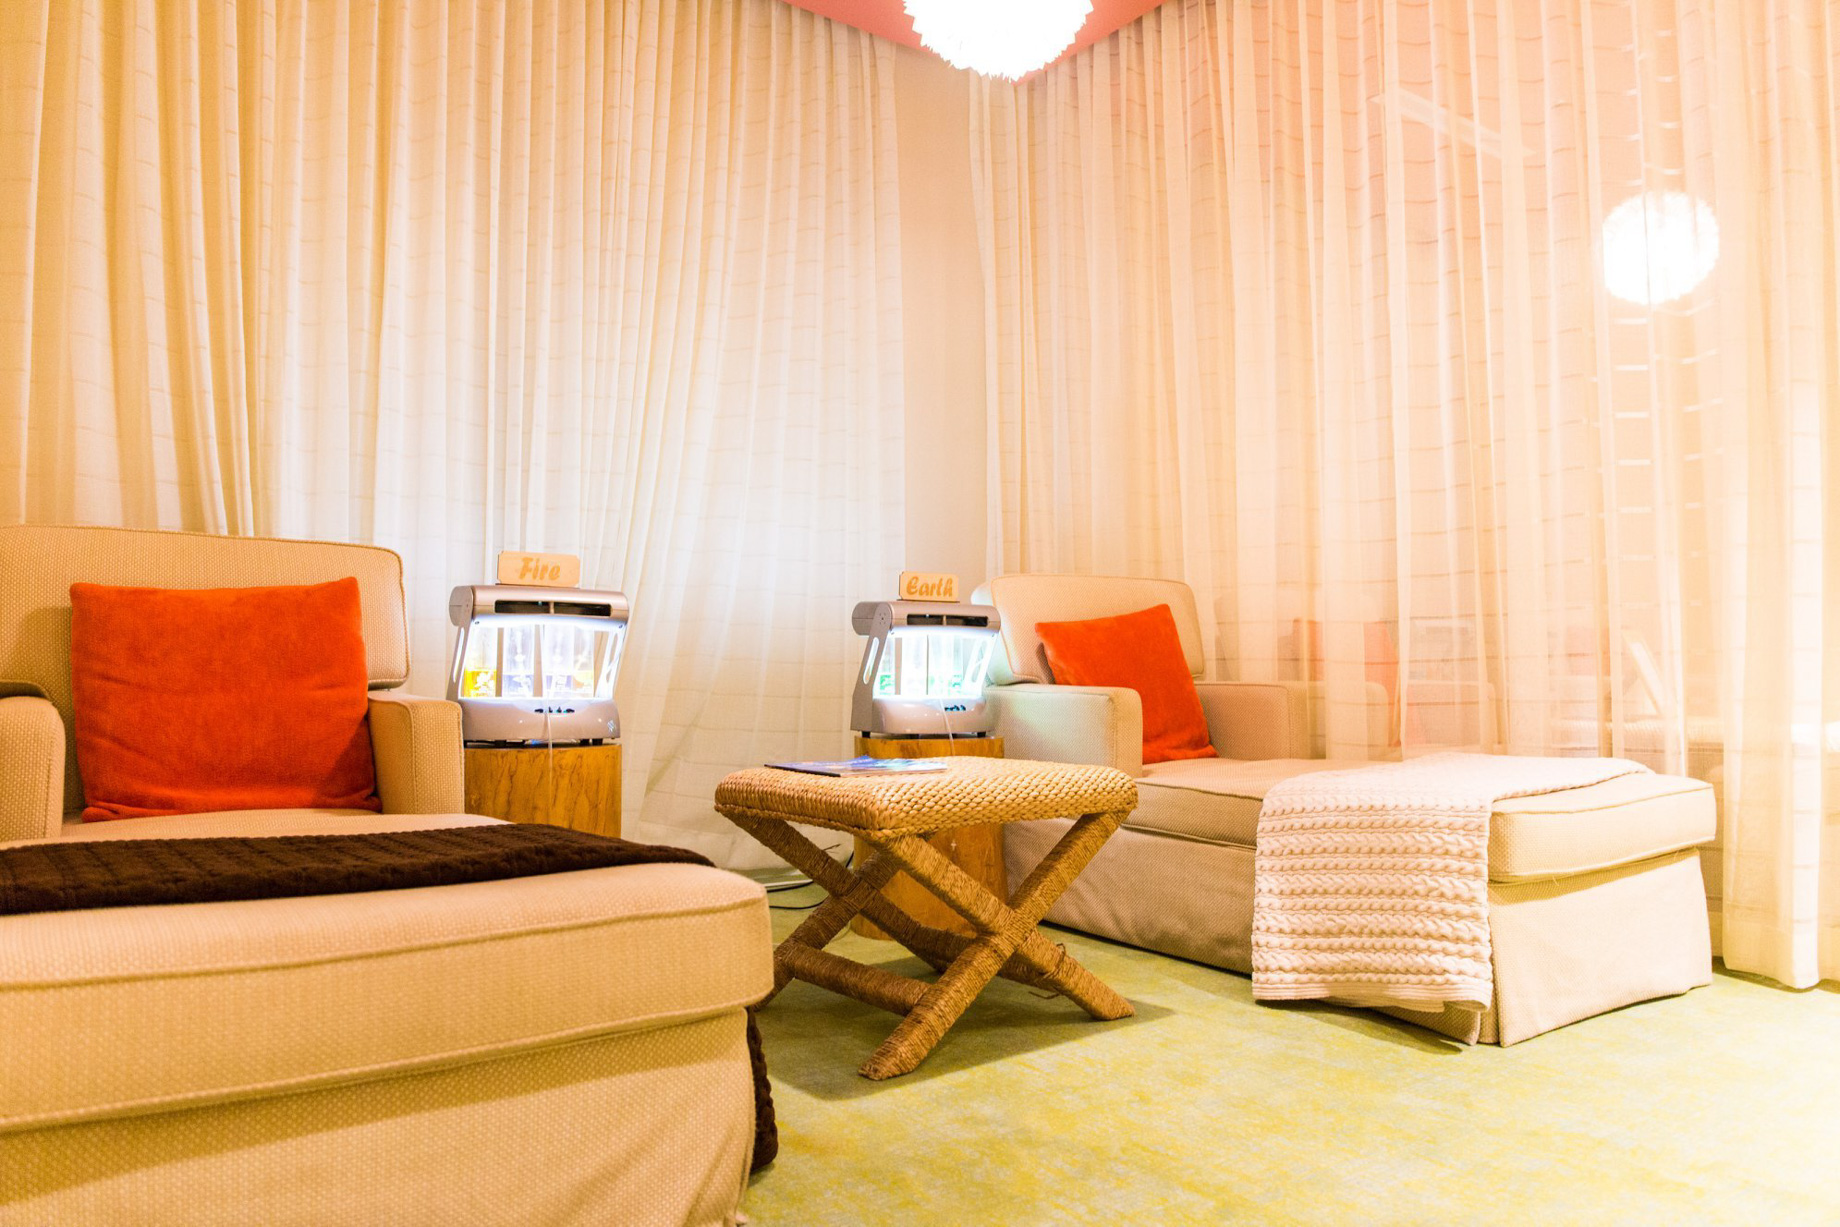 The Ritz-Carlton, Aruba Resort – Palm Beach, Aruba – Spa Oxygen Bar